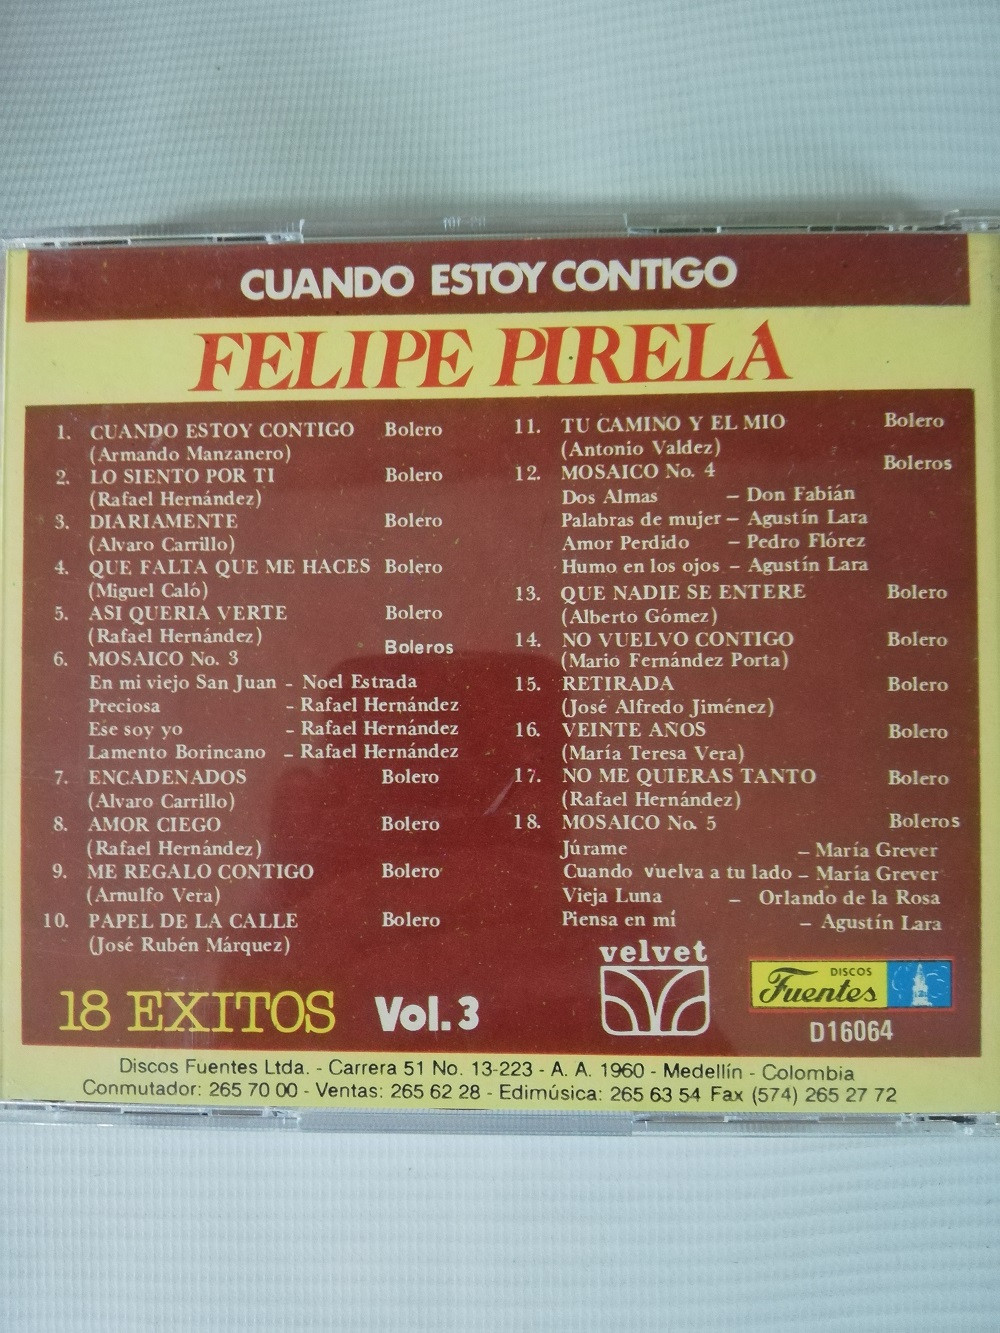 Imagen CD FELIPE PIRELA - 18 EXITOS VOL. 3 2